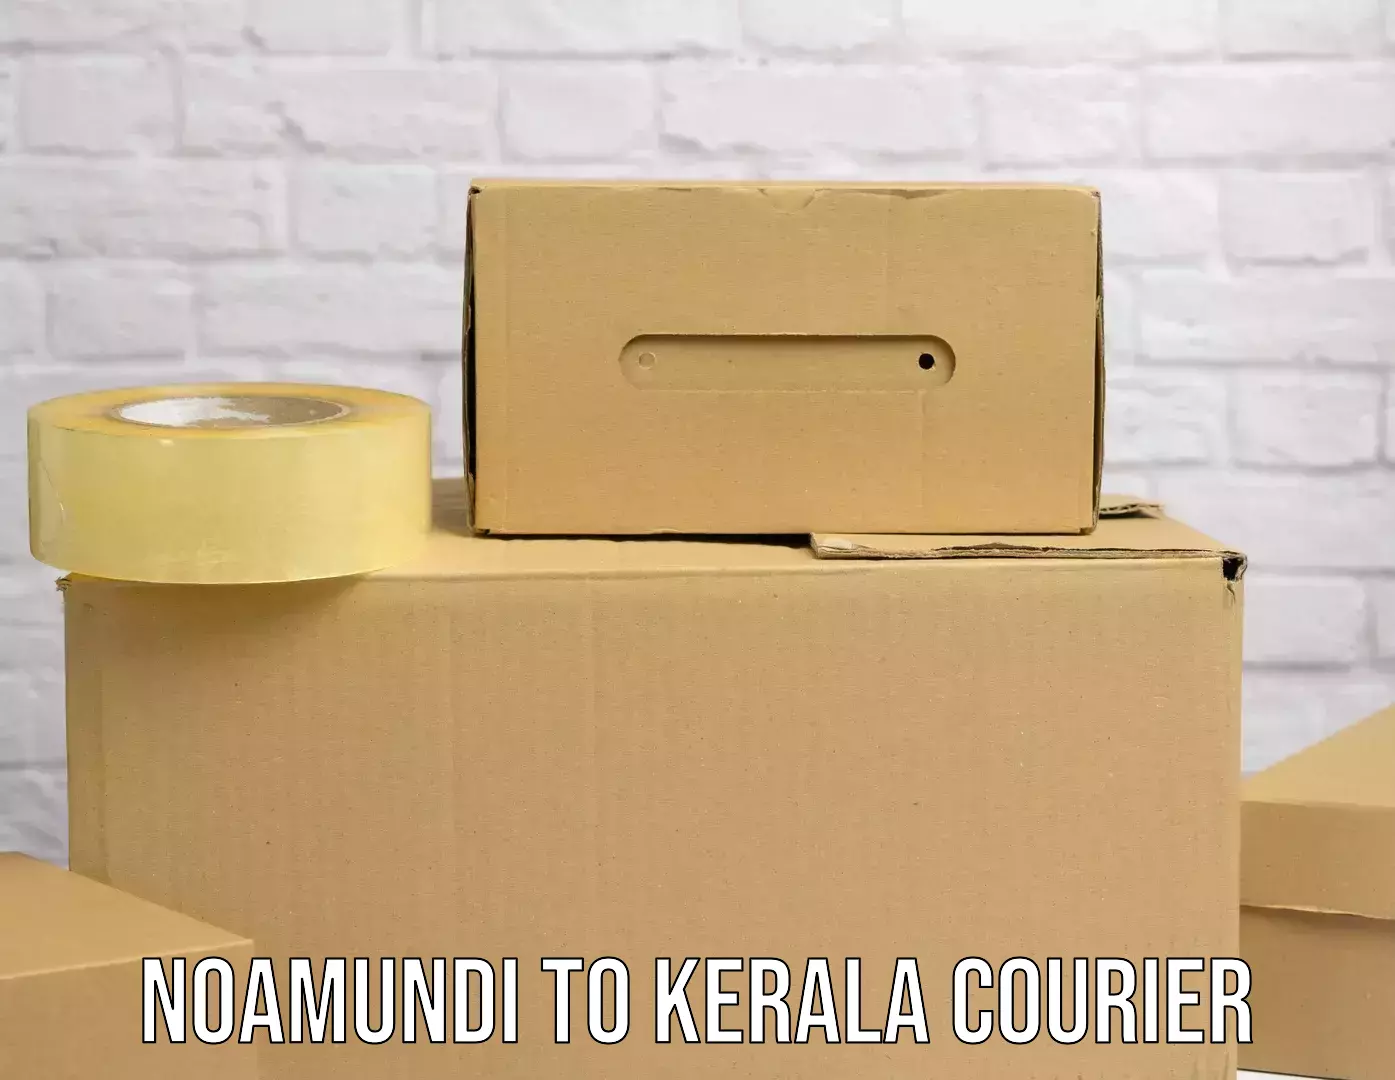 Bulk shipment Noamundi to Kerala